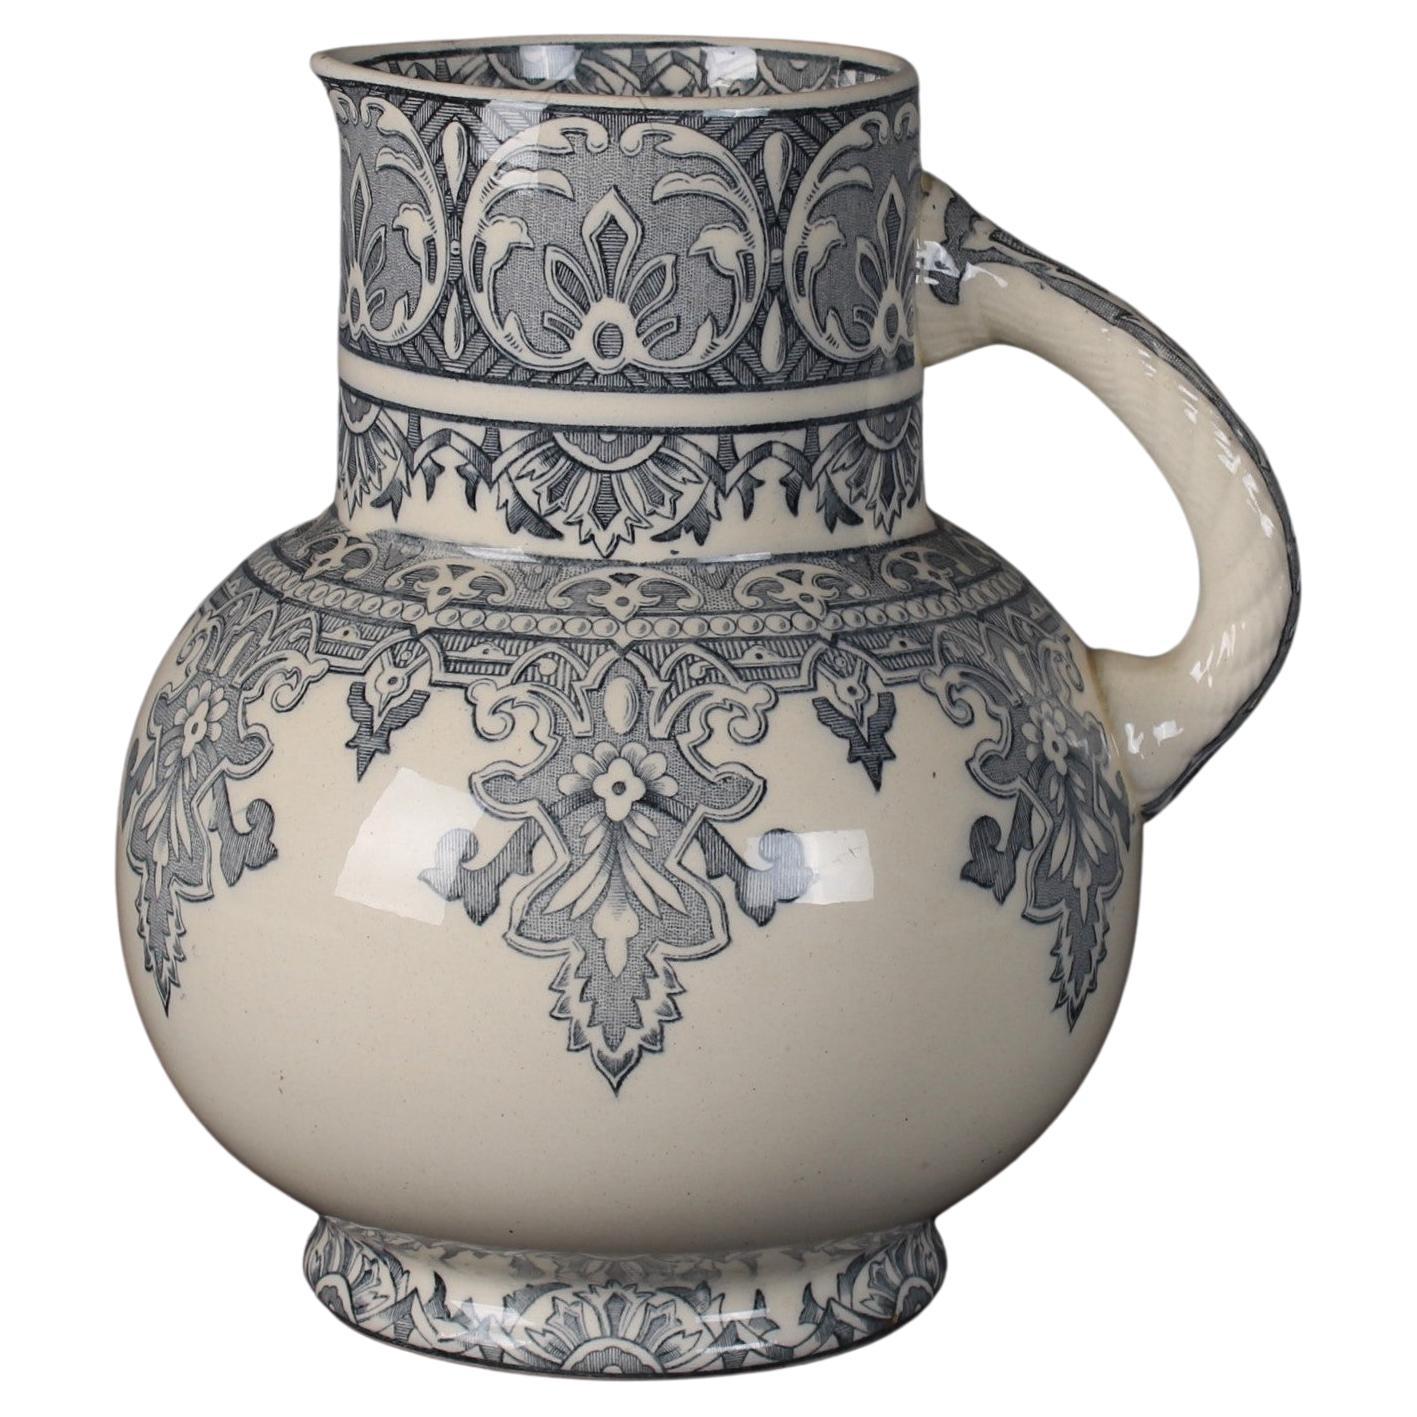 Großer französischer Krug im maurischen Stil, gestempelt „Mauresque Longchamp“, Vase